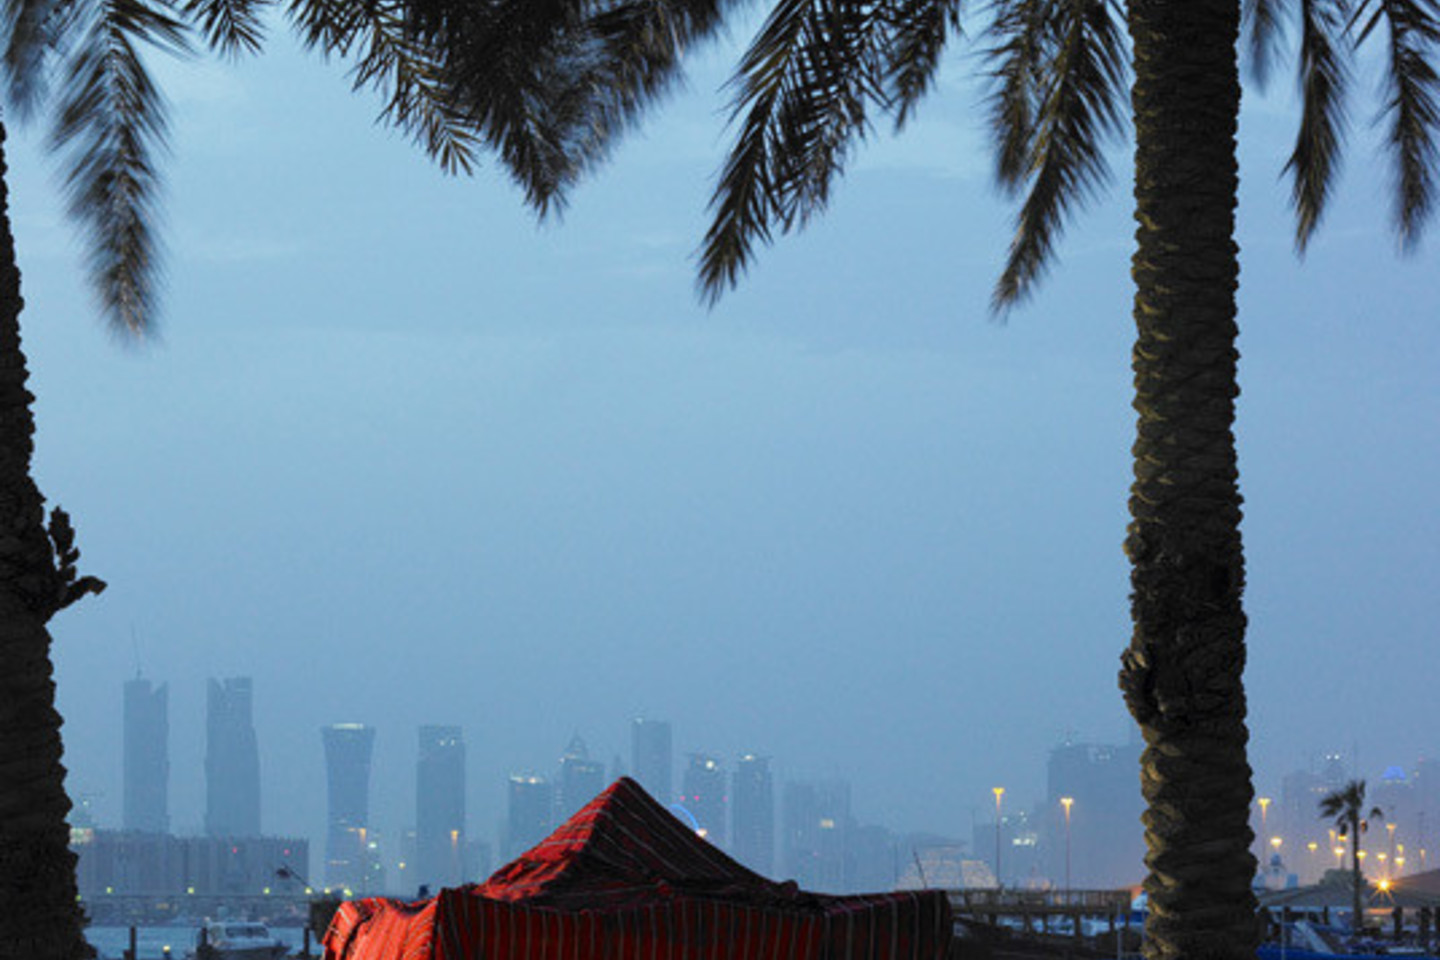 Katare, kaip ir daugelyje islamiškų šalių, iš keliautojų tikimasi pagarbos vietos tradicijoms ir atitinkamos aprangos.<br>Kataro turizmo organizacijos nuotr.